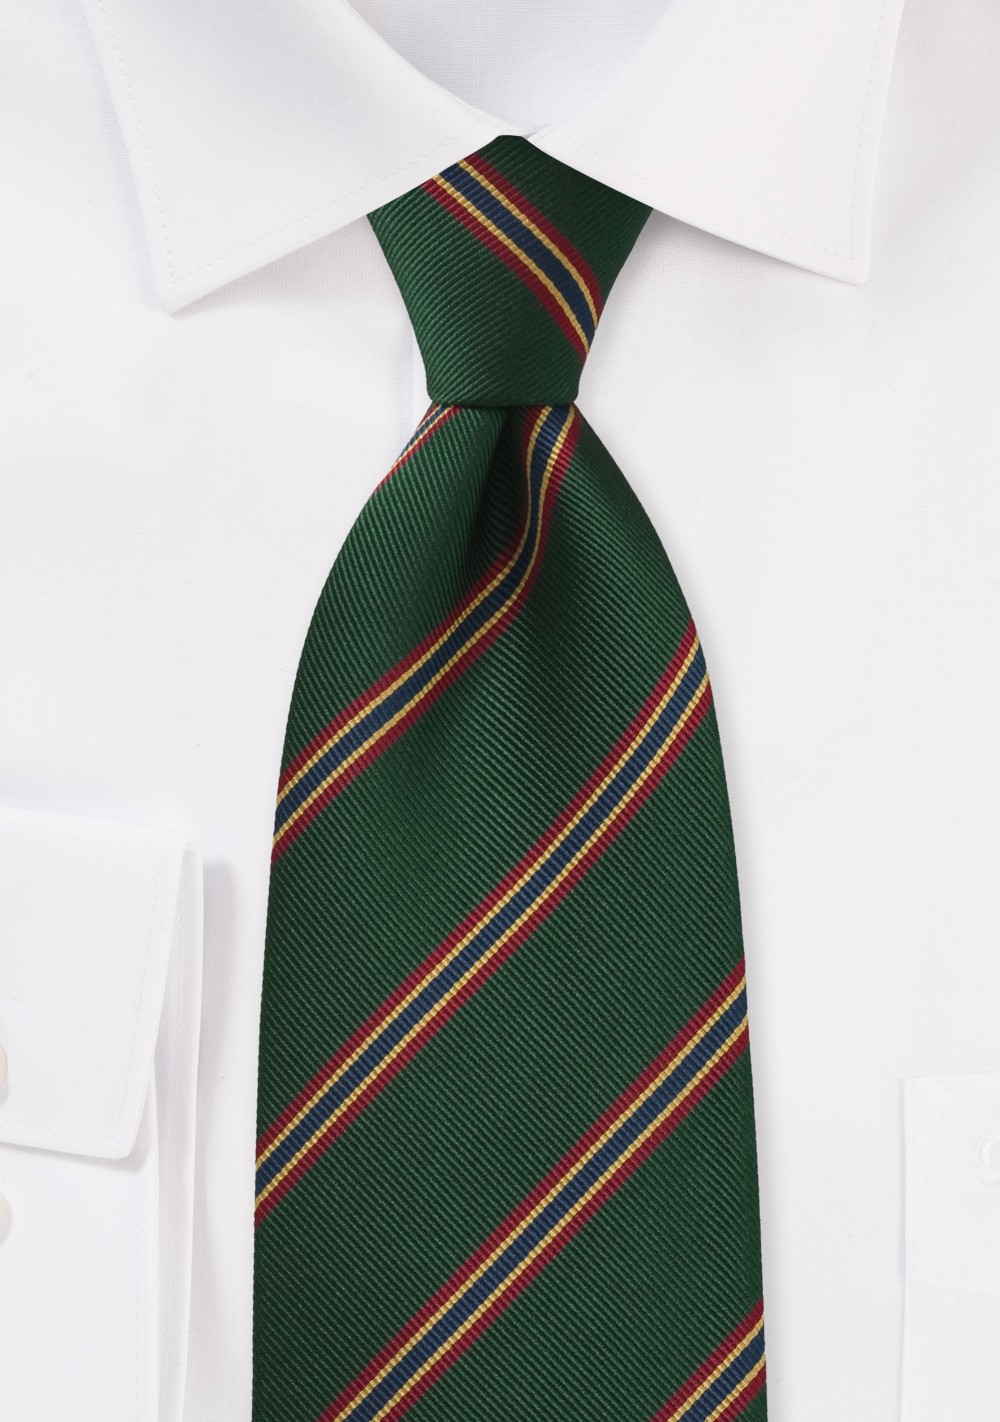 British Regimental Striped tie in Dark Green, Red, Gold, and Blue